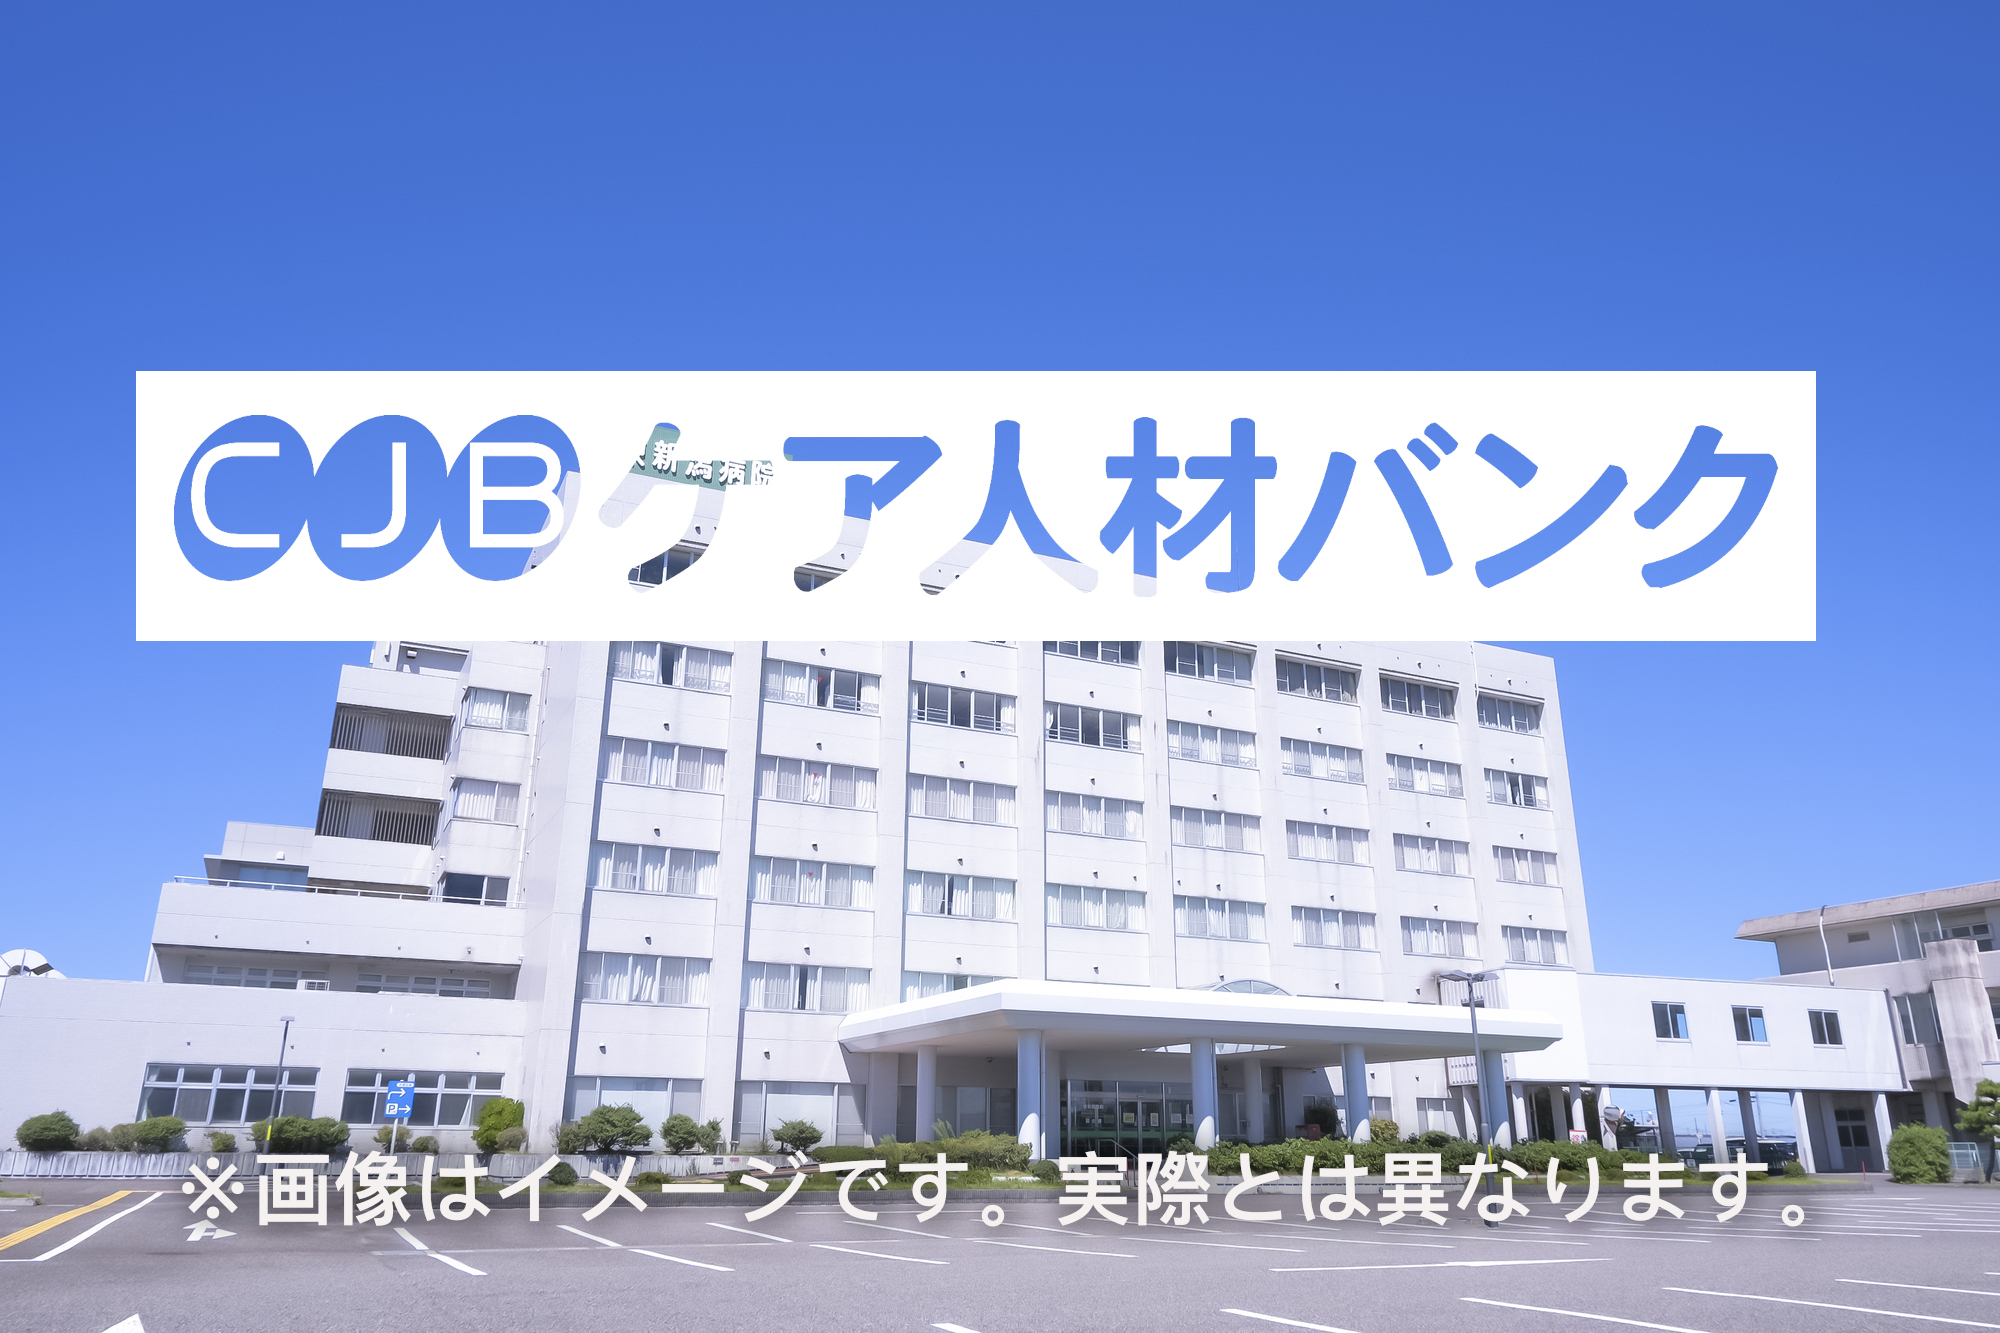 所沢白翔会病院 のイメージ画像